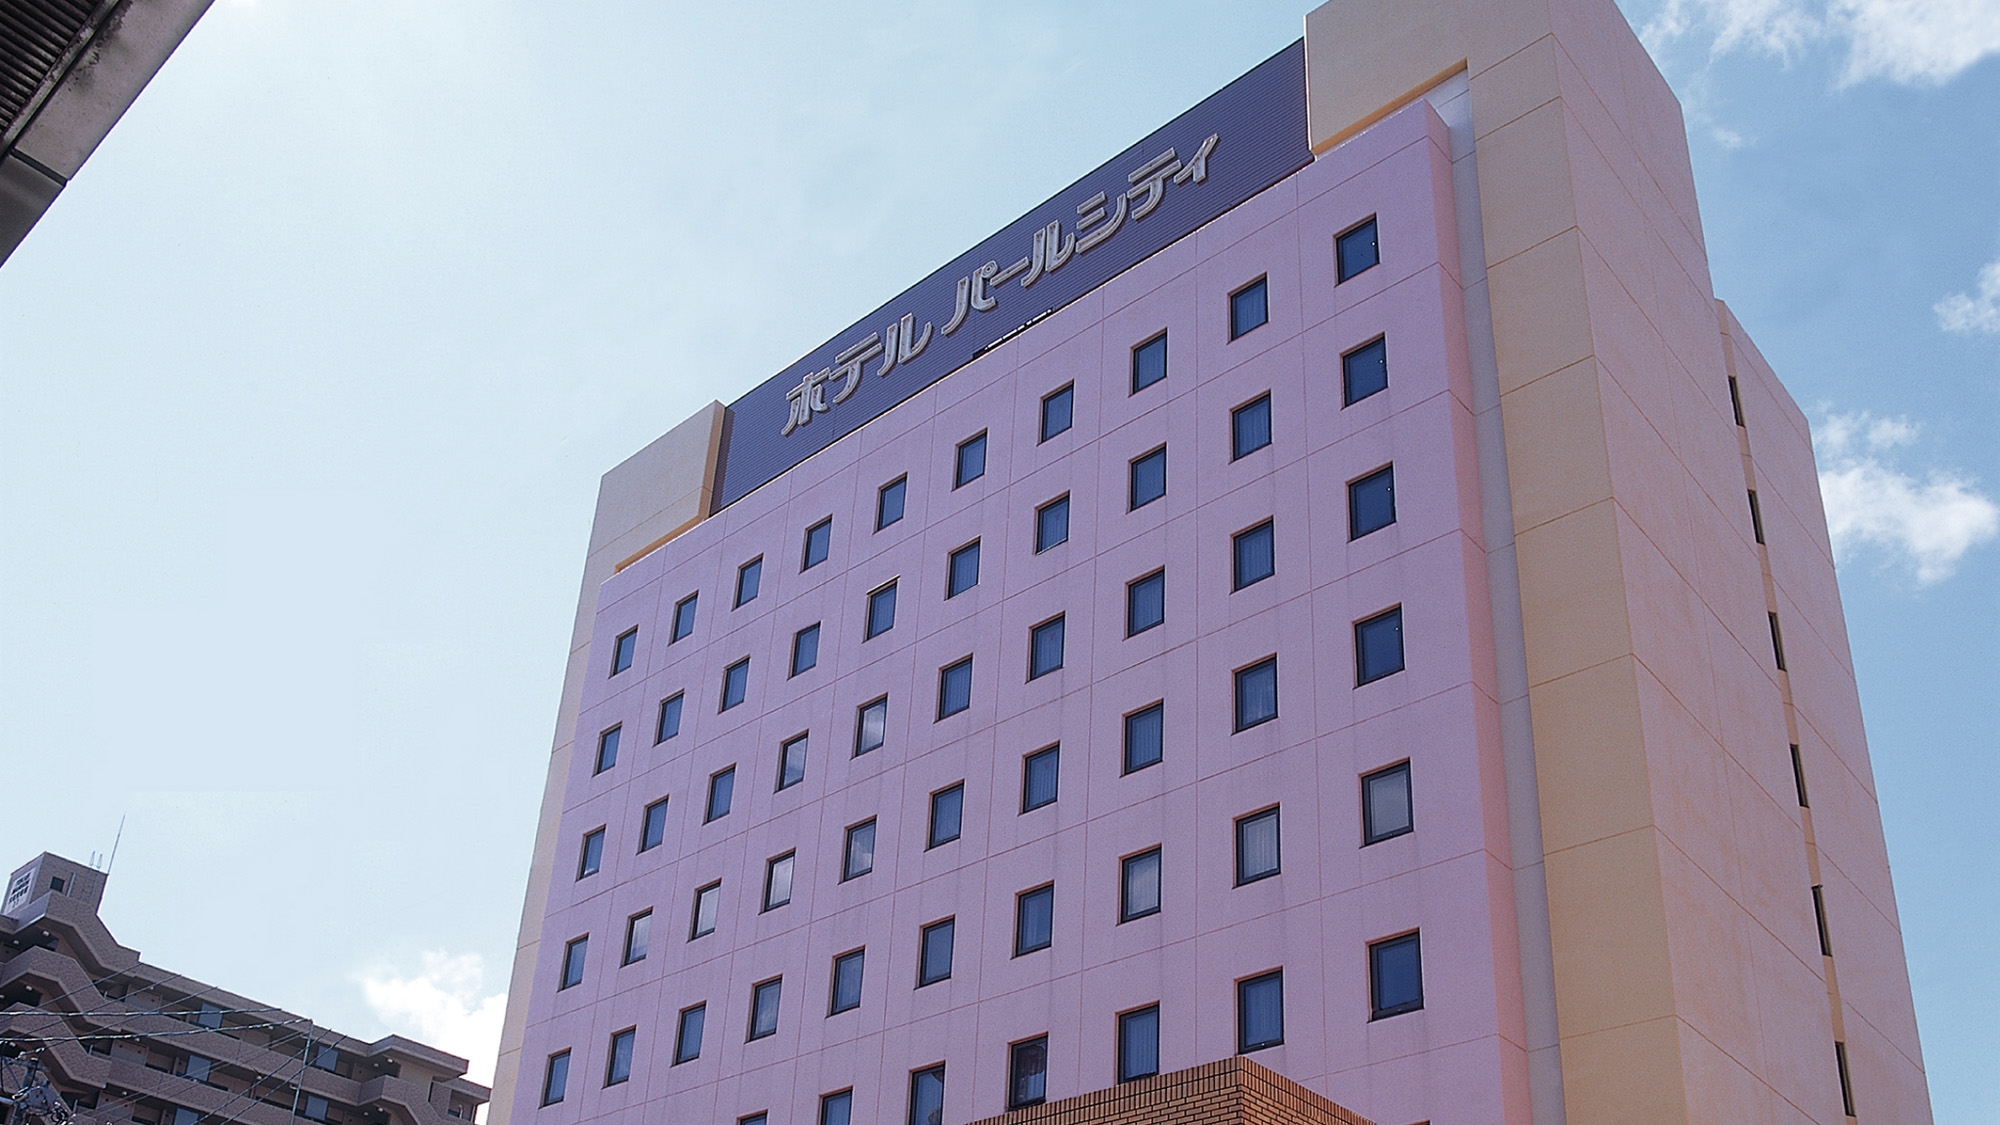 秋田のホテル 旅館 宿泊予約 楽天トラベル